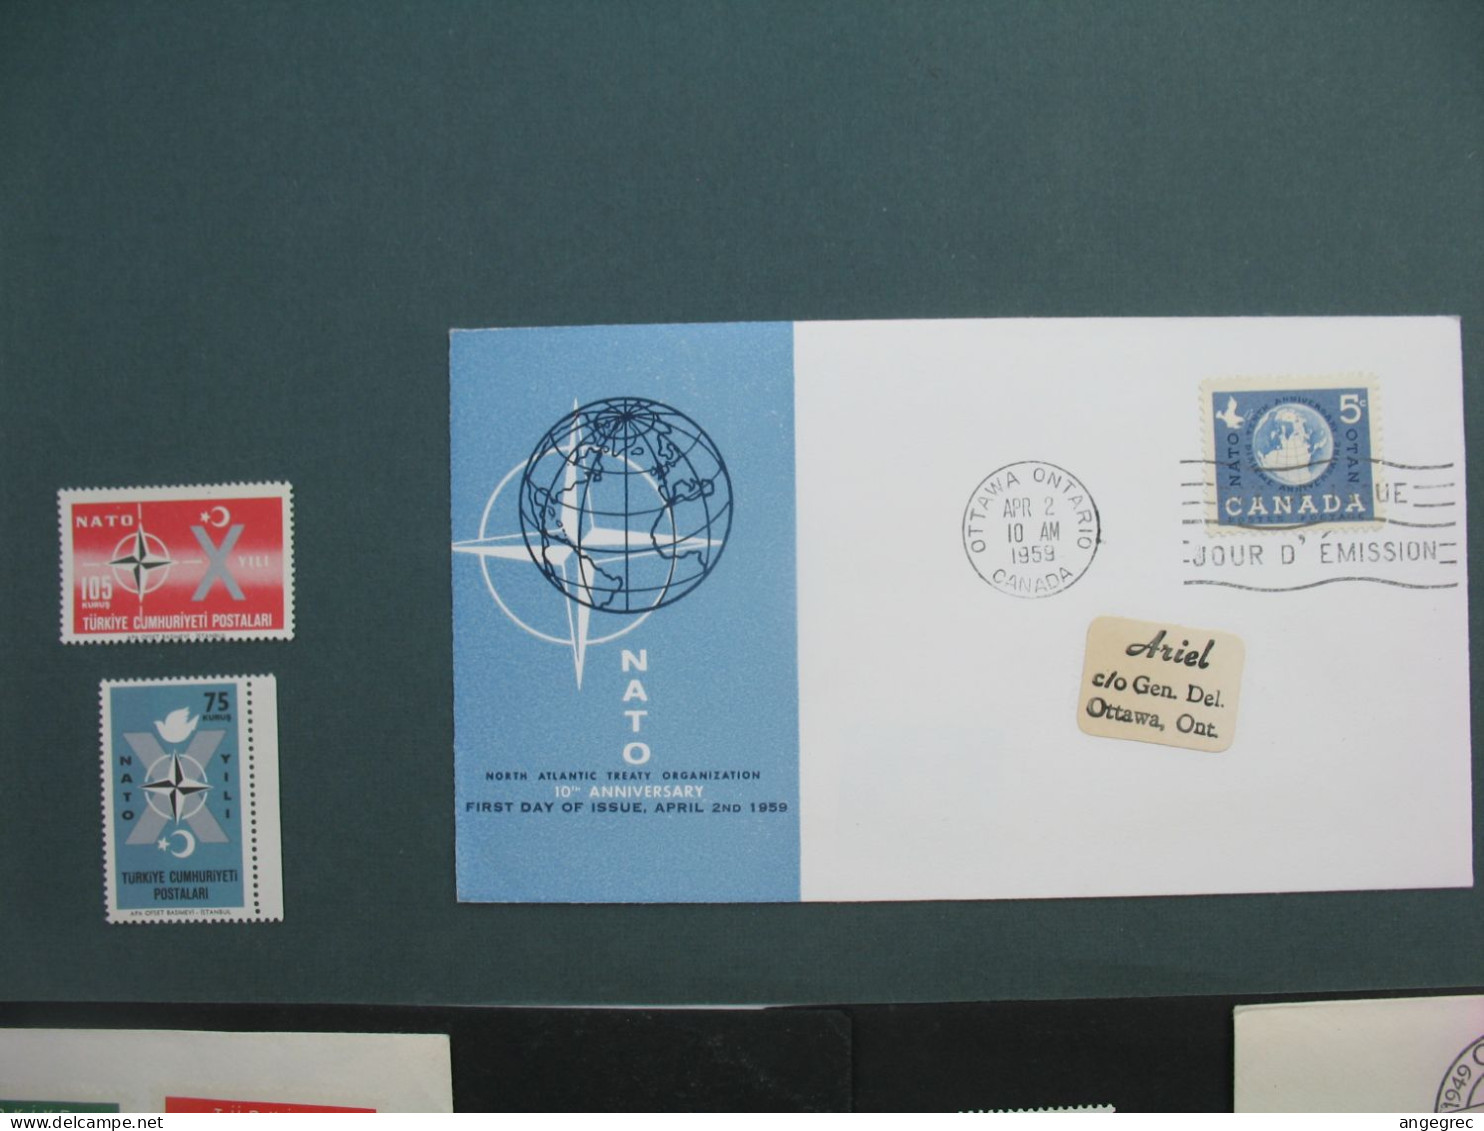 FDC  Otan lot de 8 + les 15 timbres correspondant neuf **   voir scan